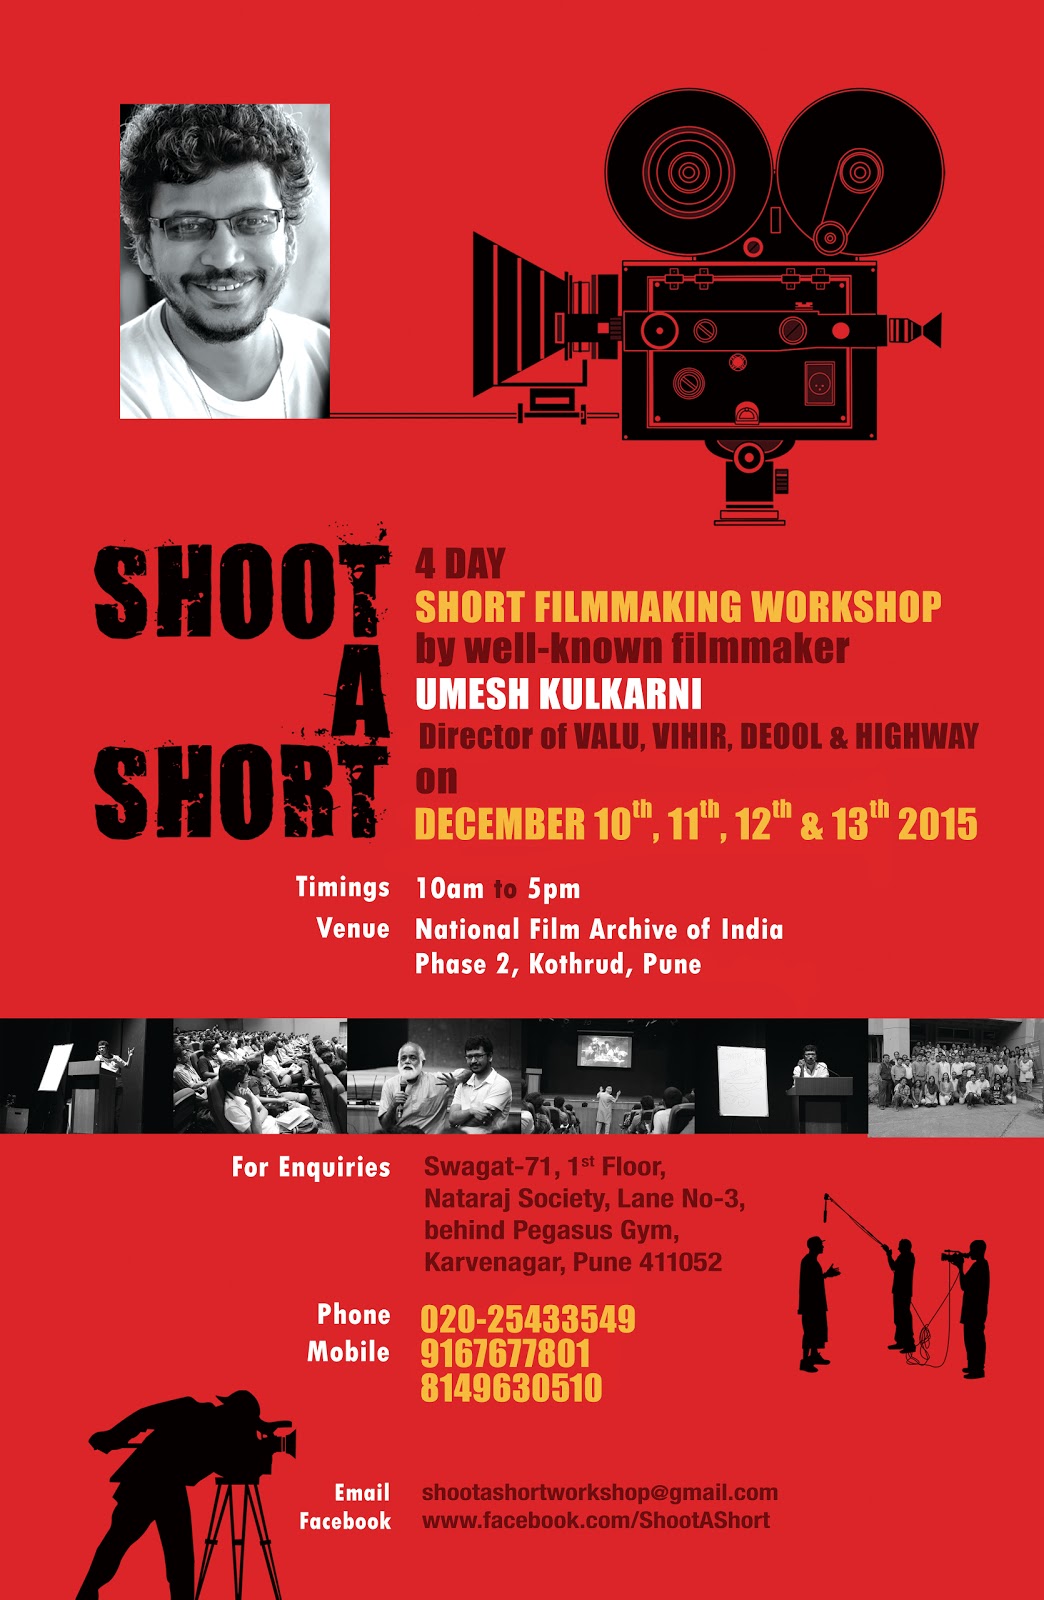 Shoot a Short: Filmmaking Workshop by filmmaker Umesh Kulkarni - Makeup ...